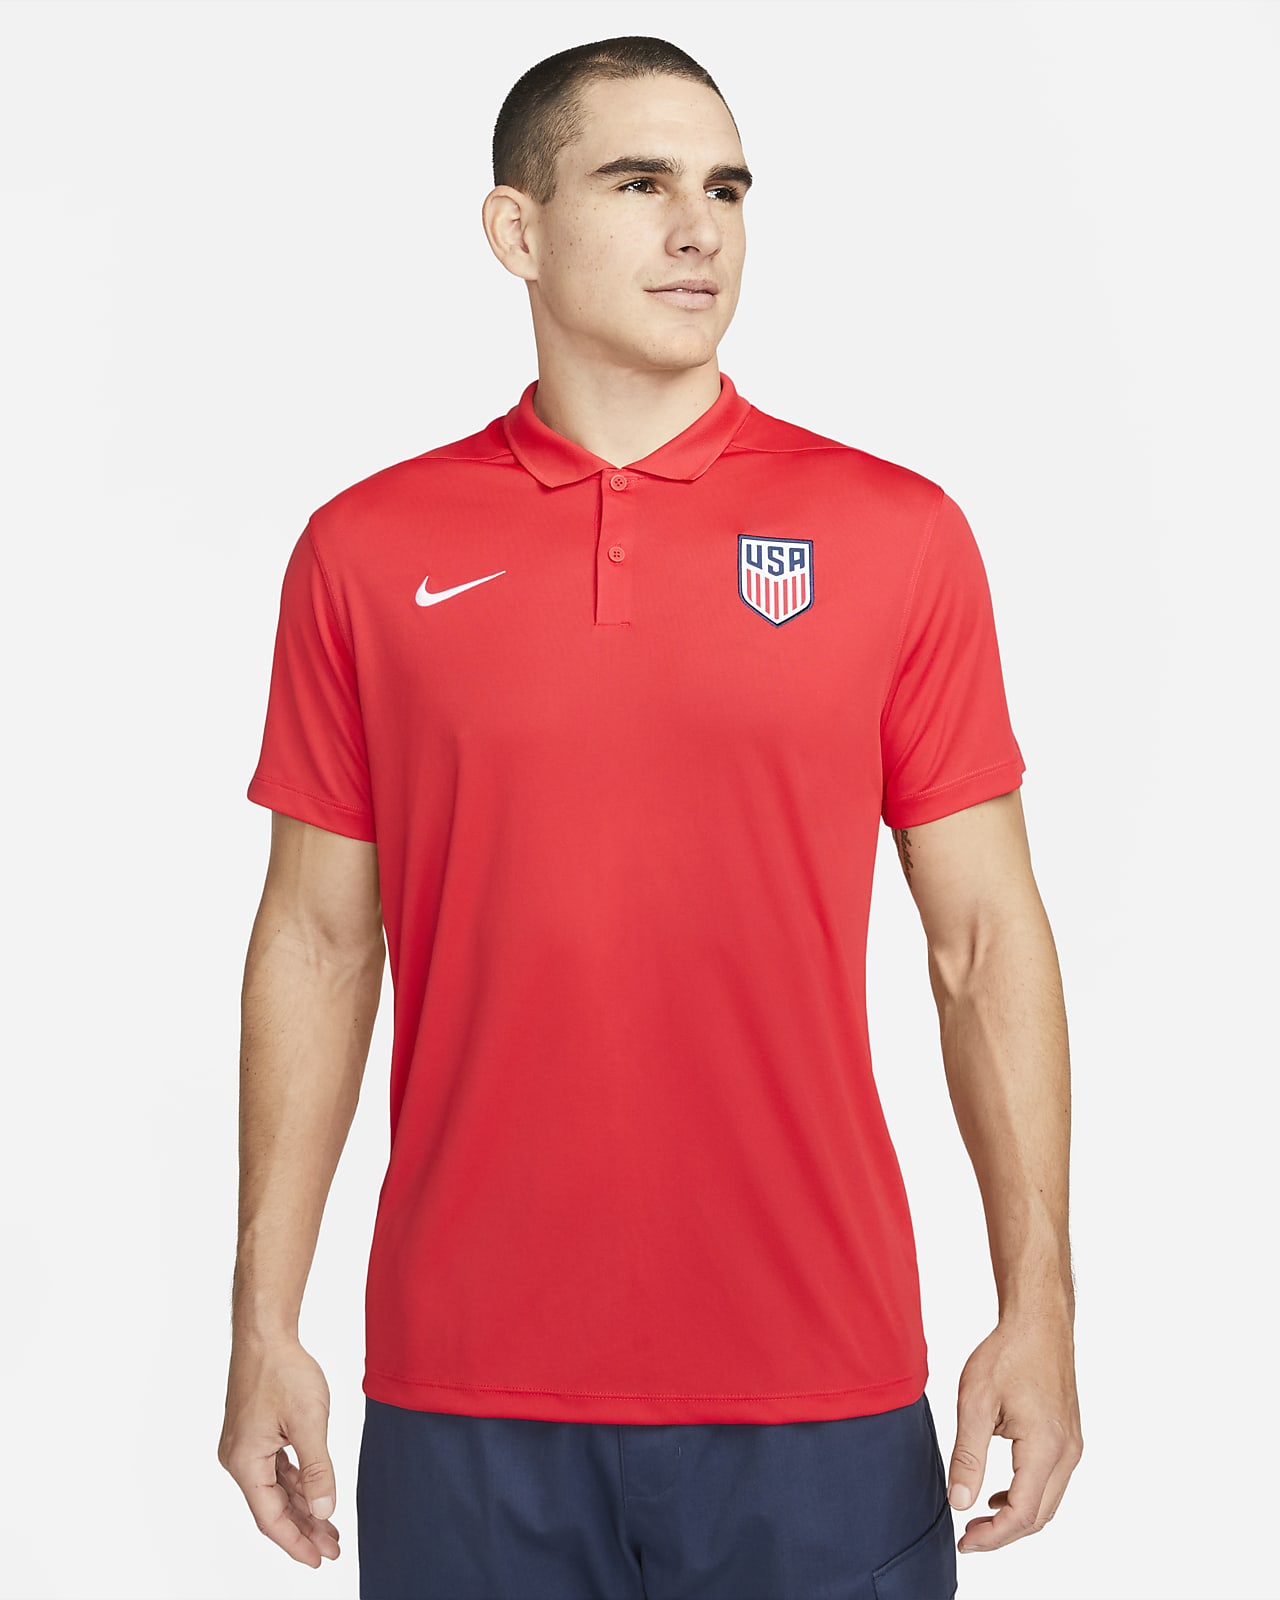 Polo de fútbol Nike Dri-FIT hombre U.S. Nike.com